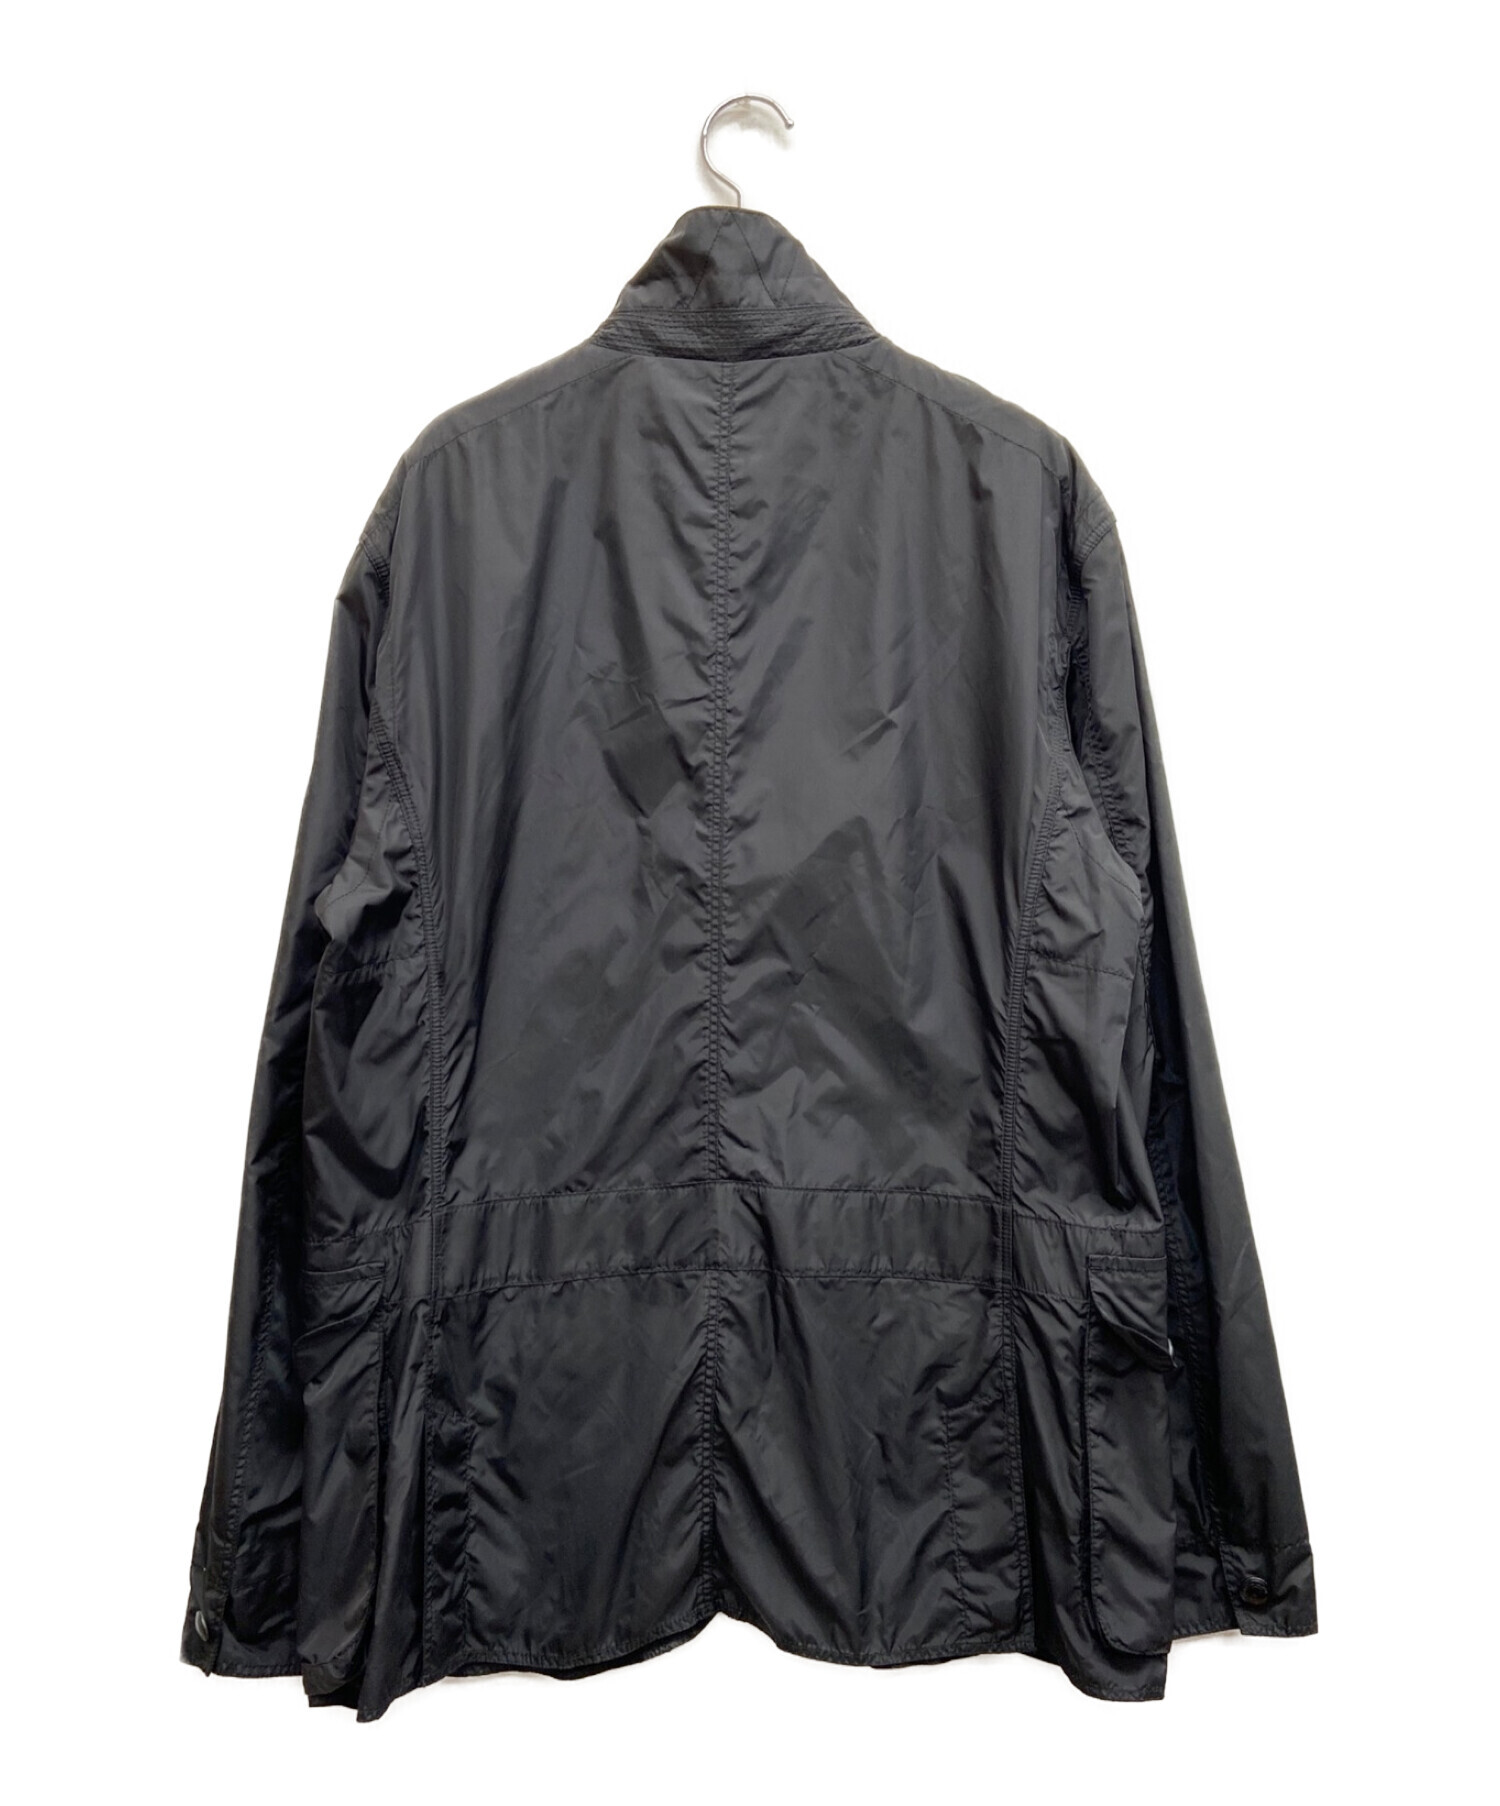 POLO RALPH LAUREN (ポロ・ラルフローレン) ナイロンジャケット ブラック サイズ:L